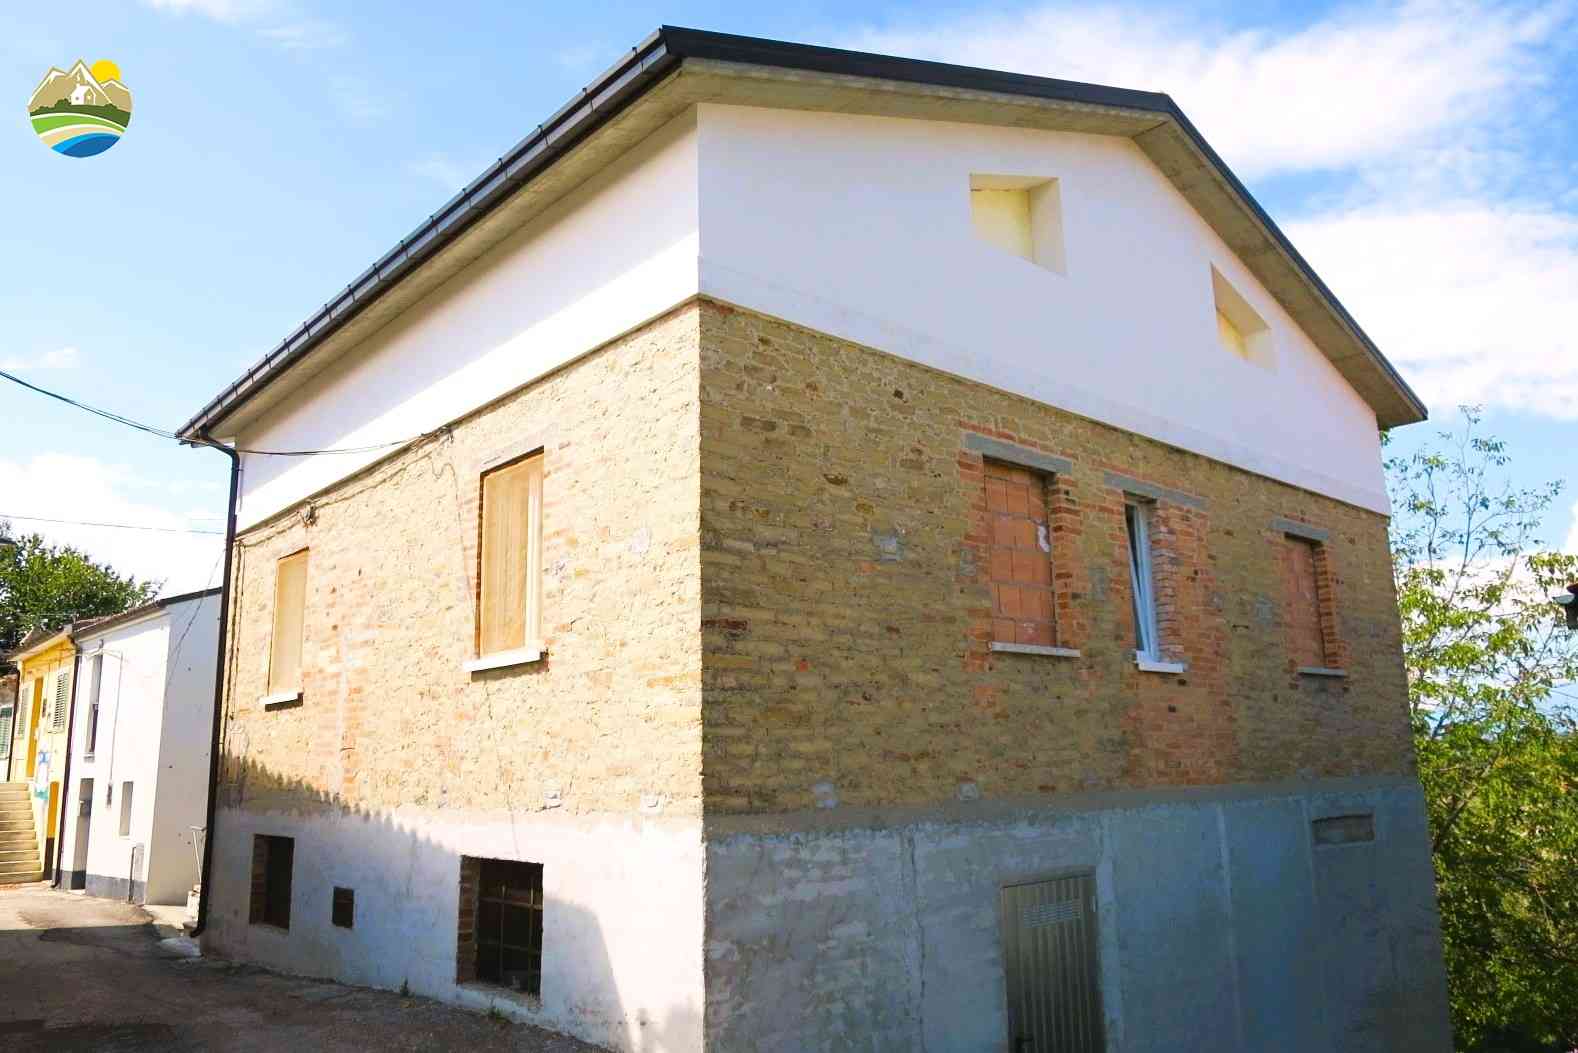 Townhouse Townhouse for sale Cellino Attanasio (TE), Casa del Barone - Cellino Attanasio - EUR 105.105 570